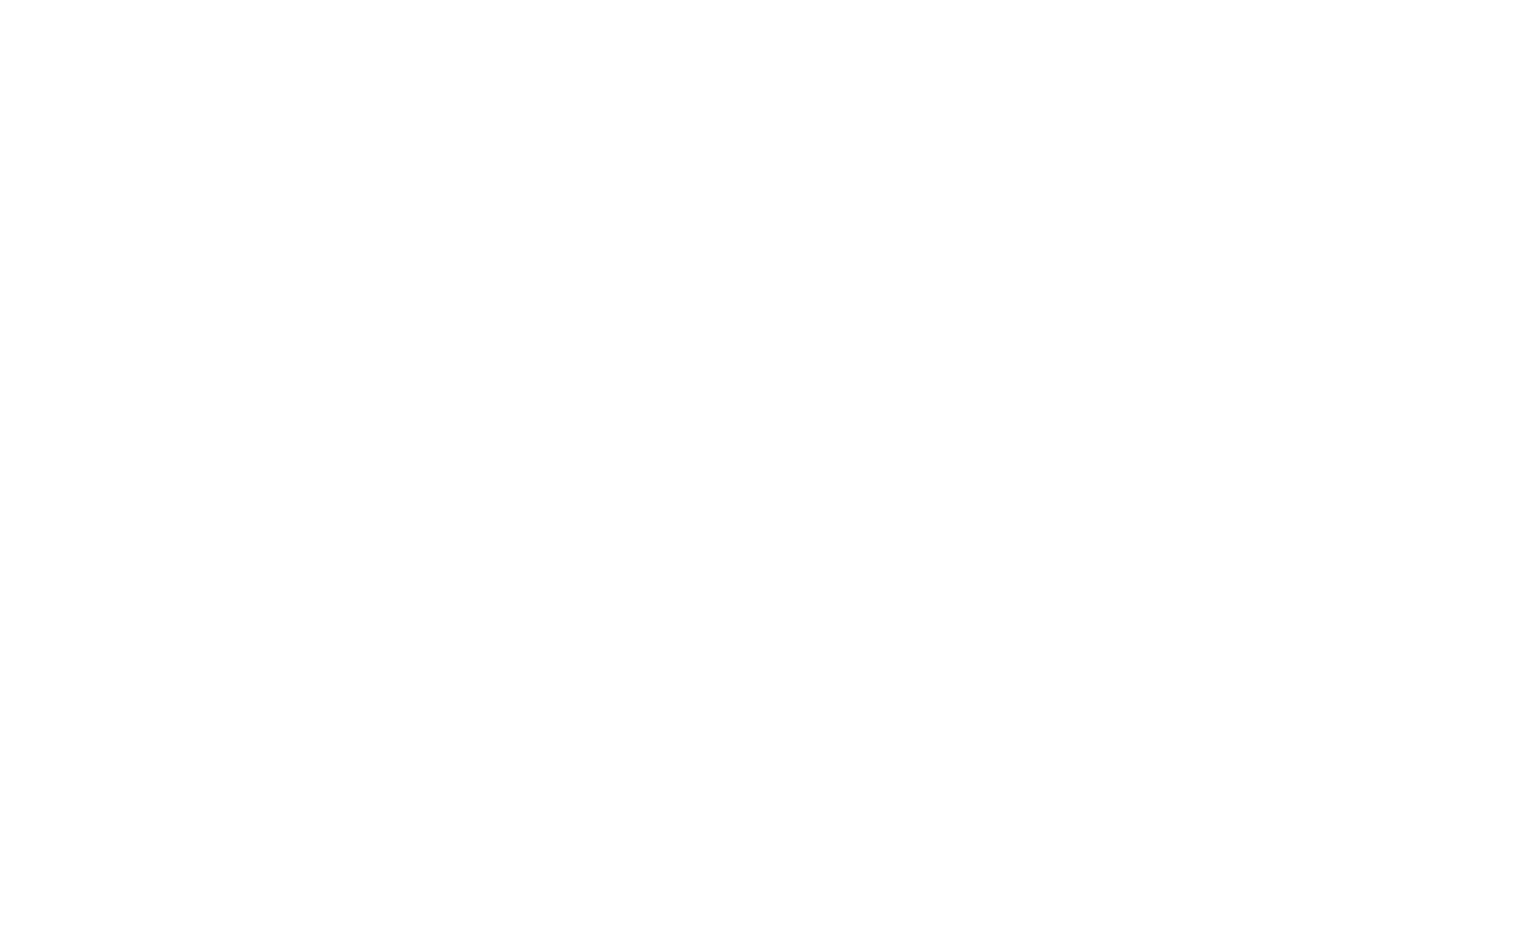 Mishra Dhatu Nigam logo large for dark backgrounds (transparent PNG)